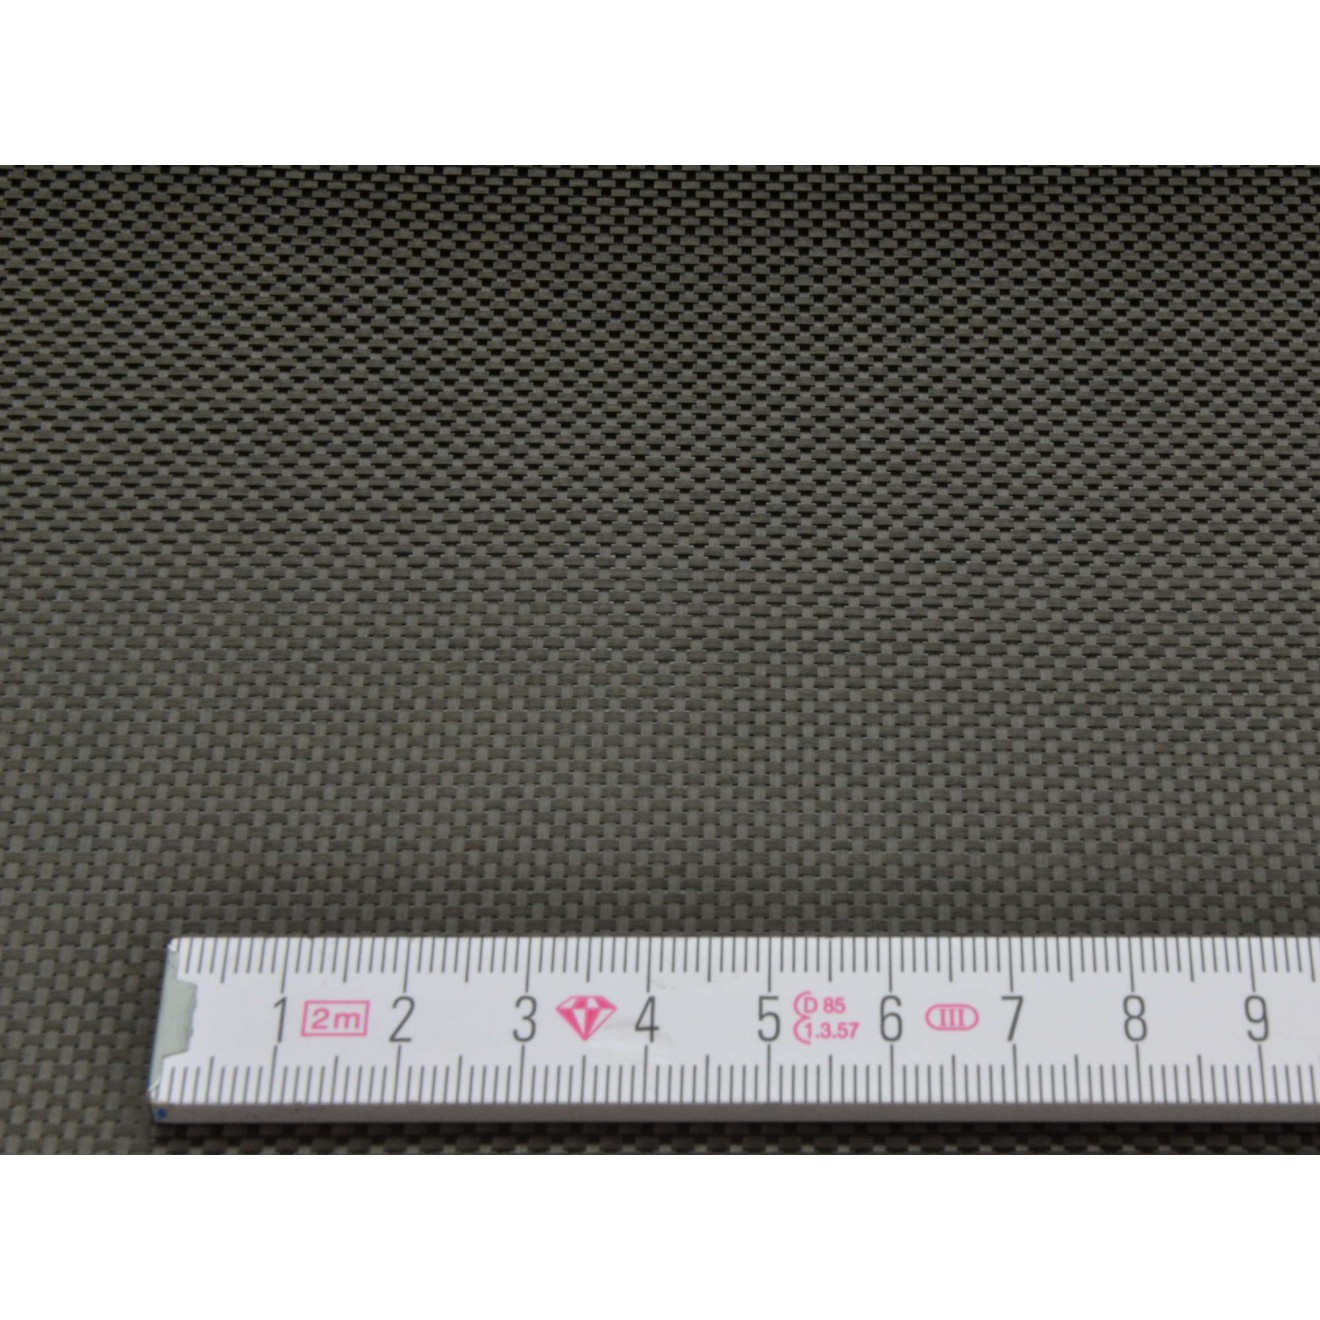 Woven carbon fiber fabric 1K 93g/m², plain weave